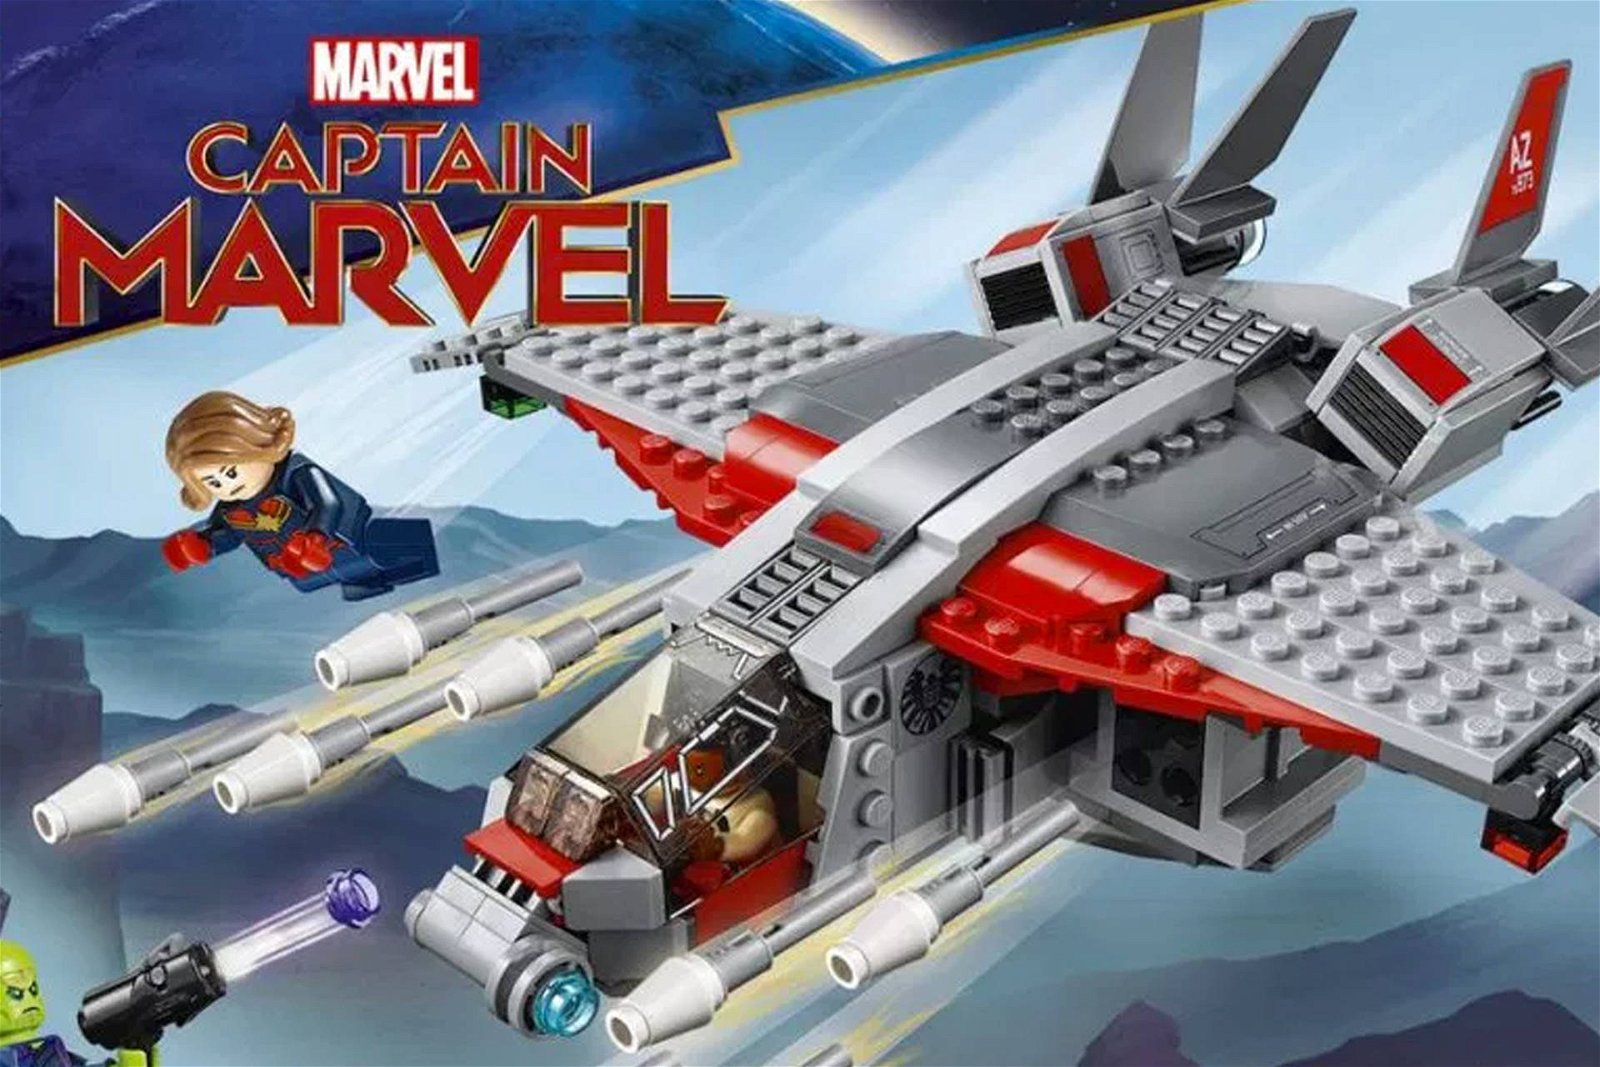 Immagine di Le foto ufficiali del set Lego di Captain Marvel